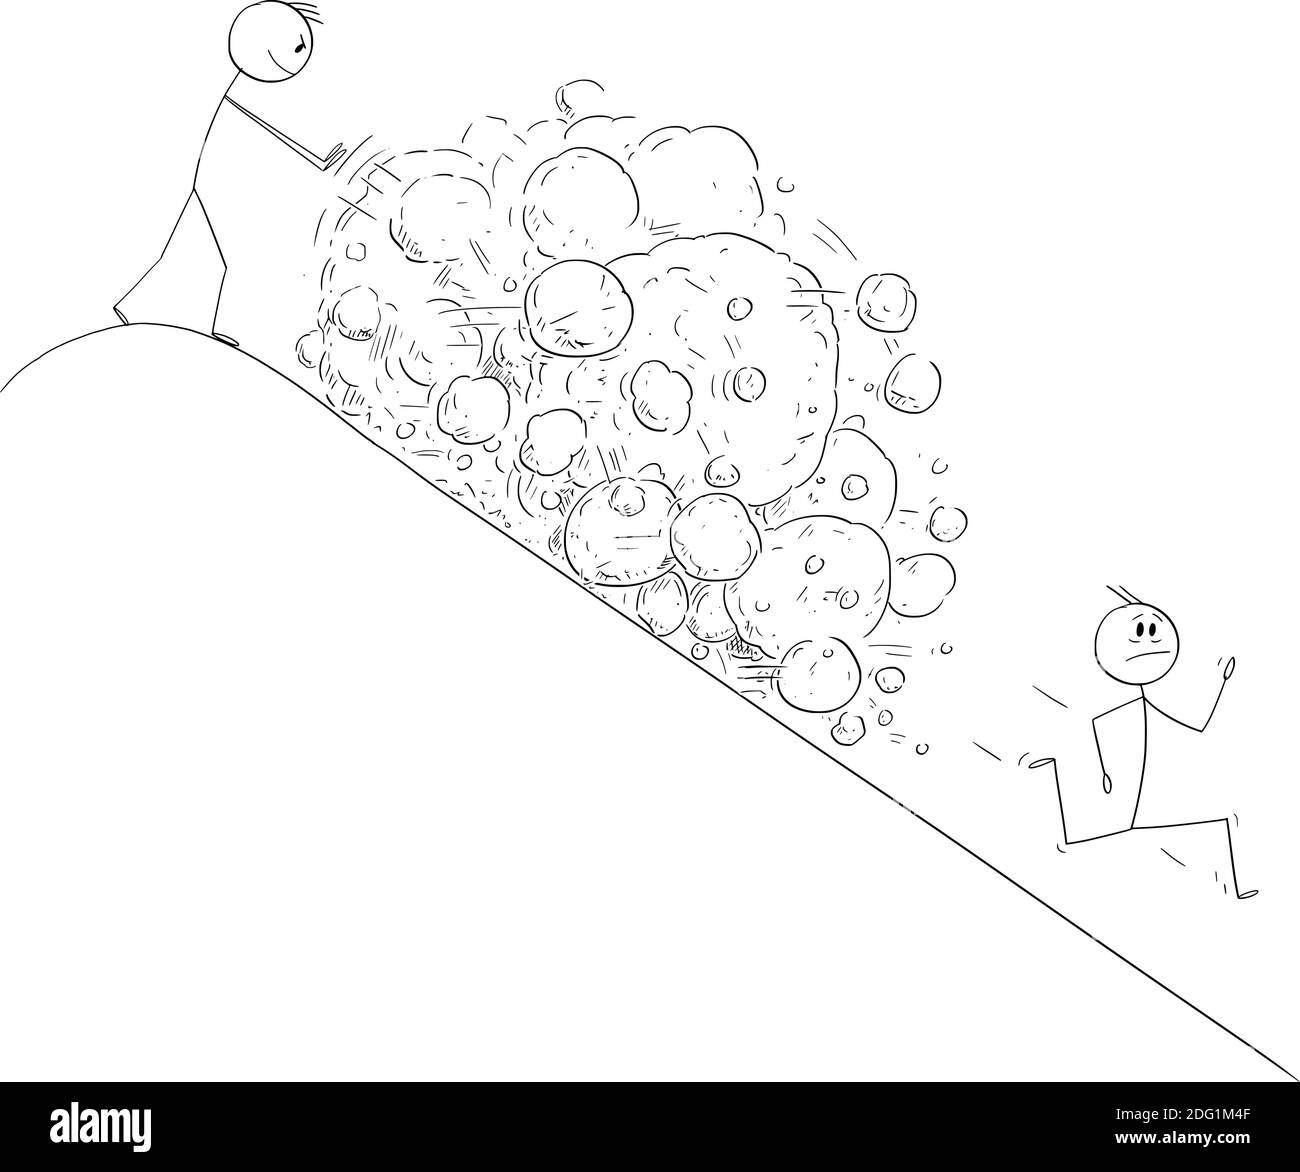 Vektor Cartoon Stick Figur Abbildung des Menschen auf der Spitze des Hügels Schaffung Lawine von Felsen fallen auf laufenden Konkurrenten oder Feind. Stock Vektor